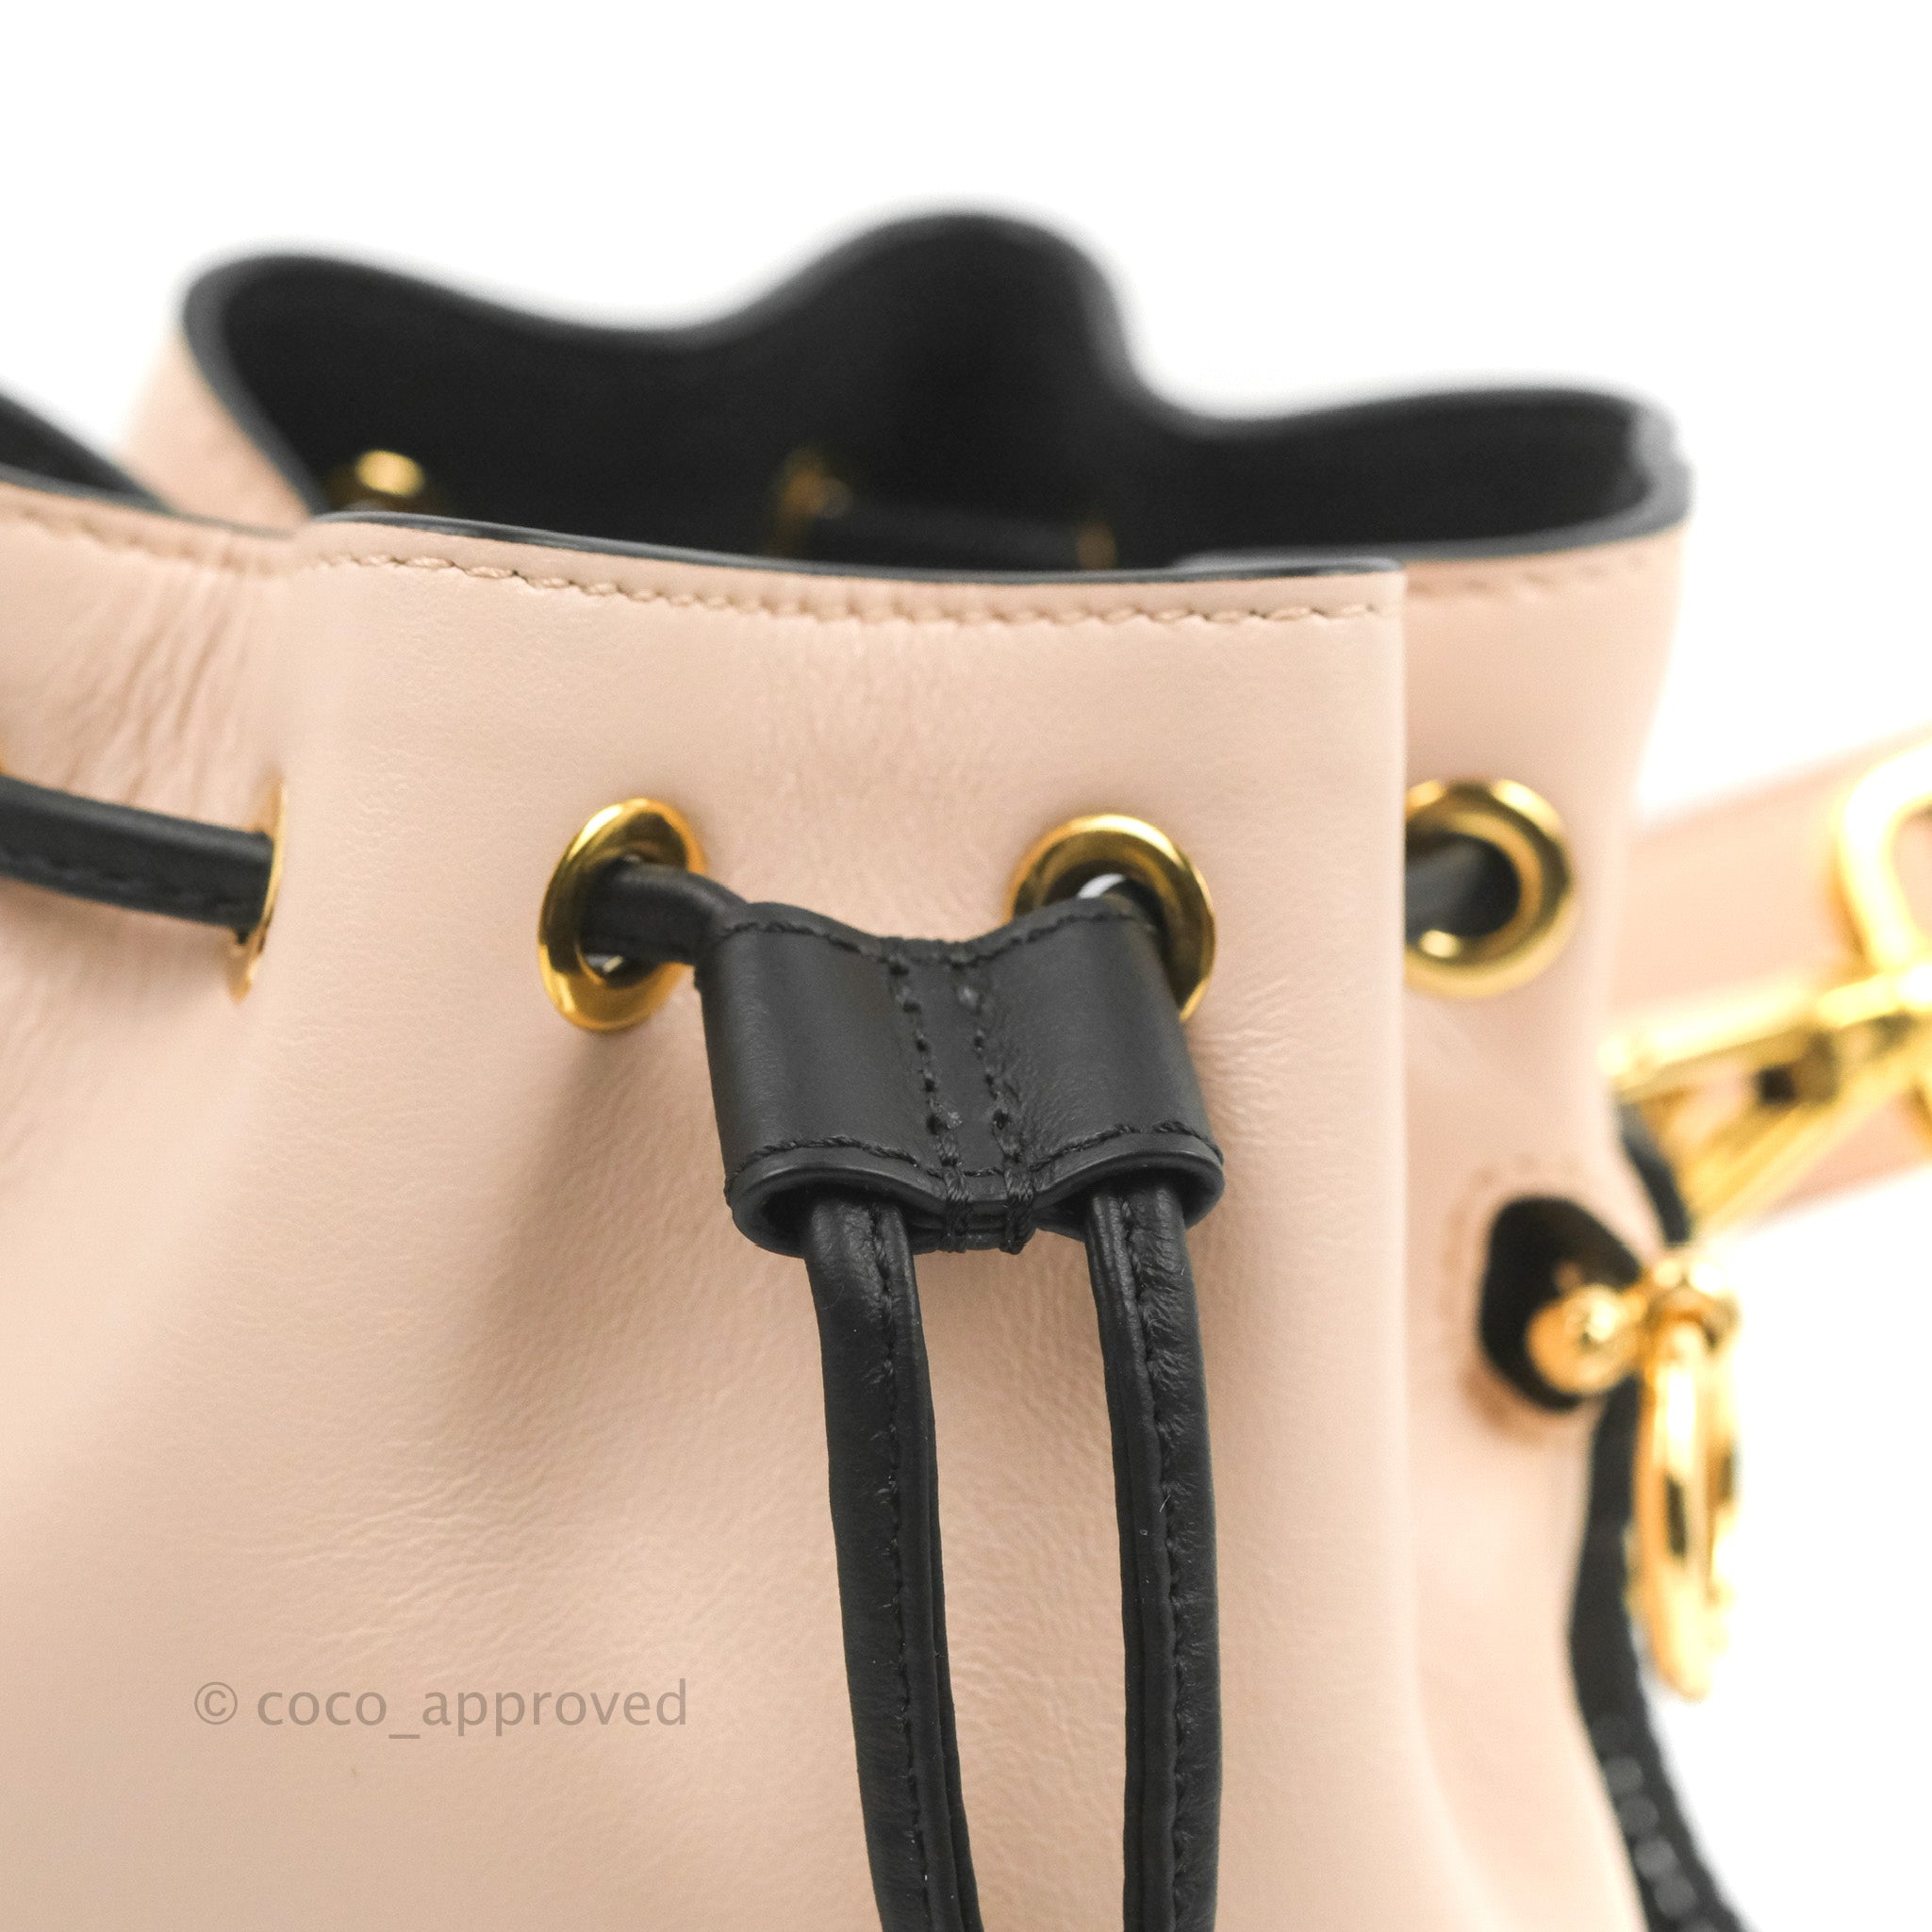 Fendi Transparent and Black PU Mini Mon Tresor Bag – BlackSkinny